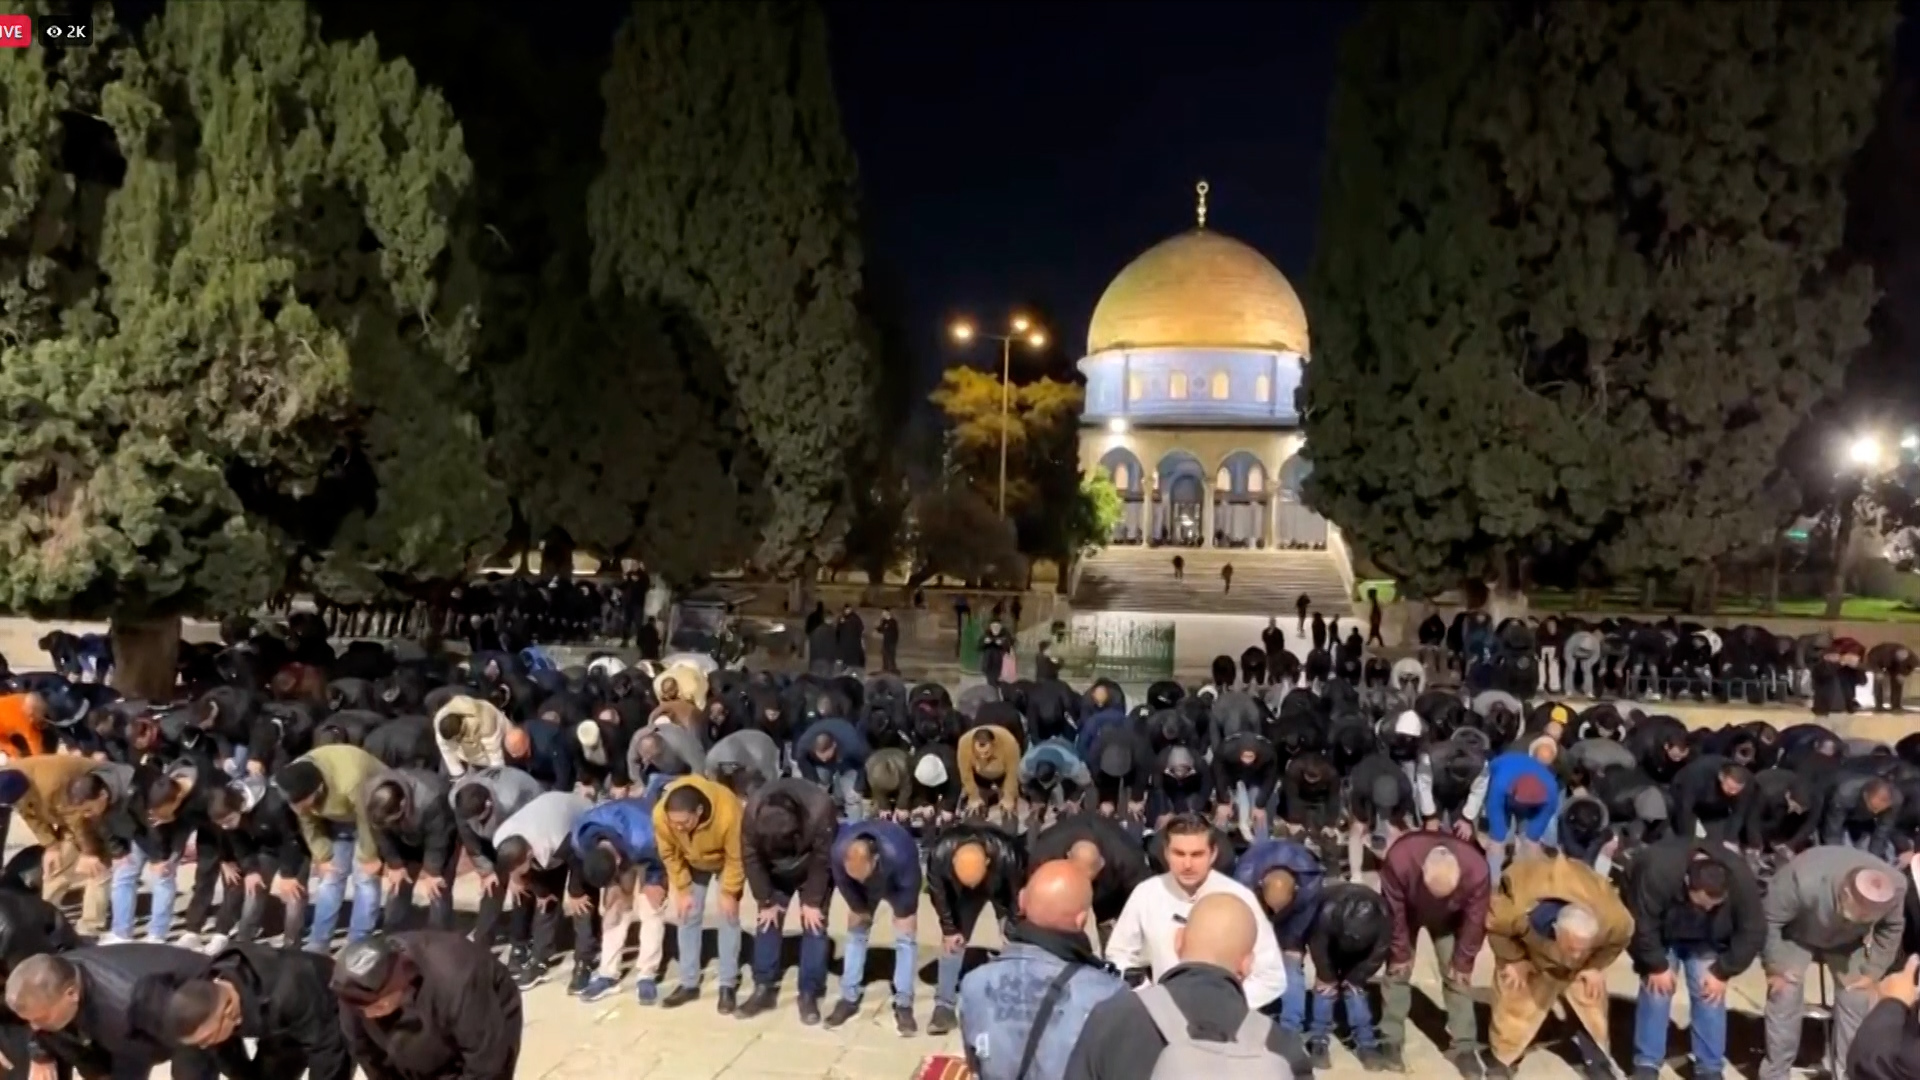 إقامة صلاة التراويح الأولى بالمسجد الأقصى وسط إجراءات أمنية إسرائيلية مشددة | أخبار التقارير الإخبارية – البوكس نيوز